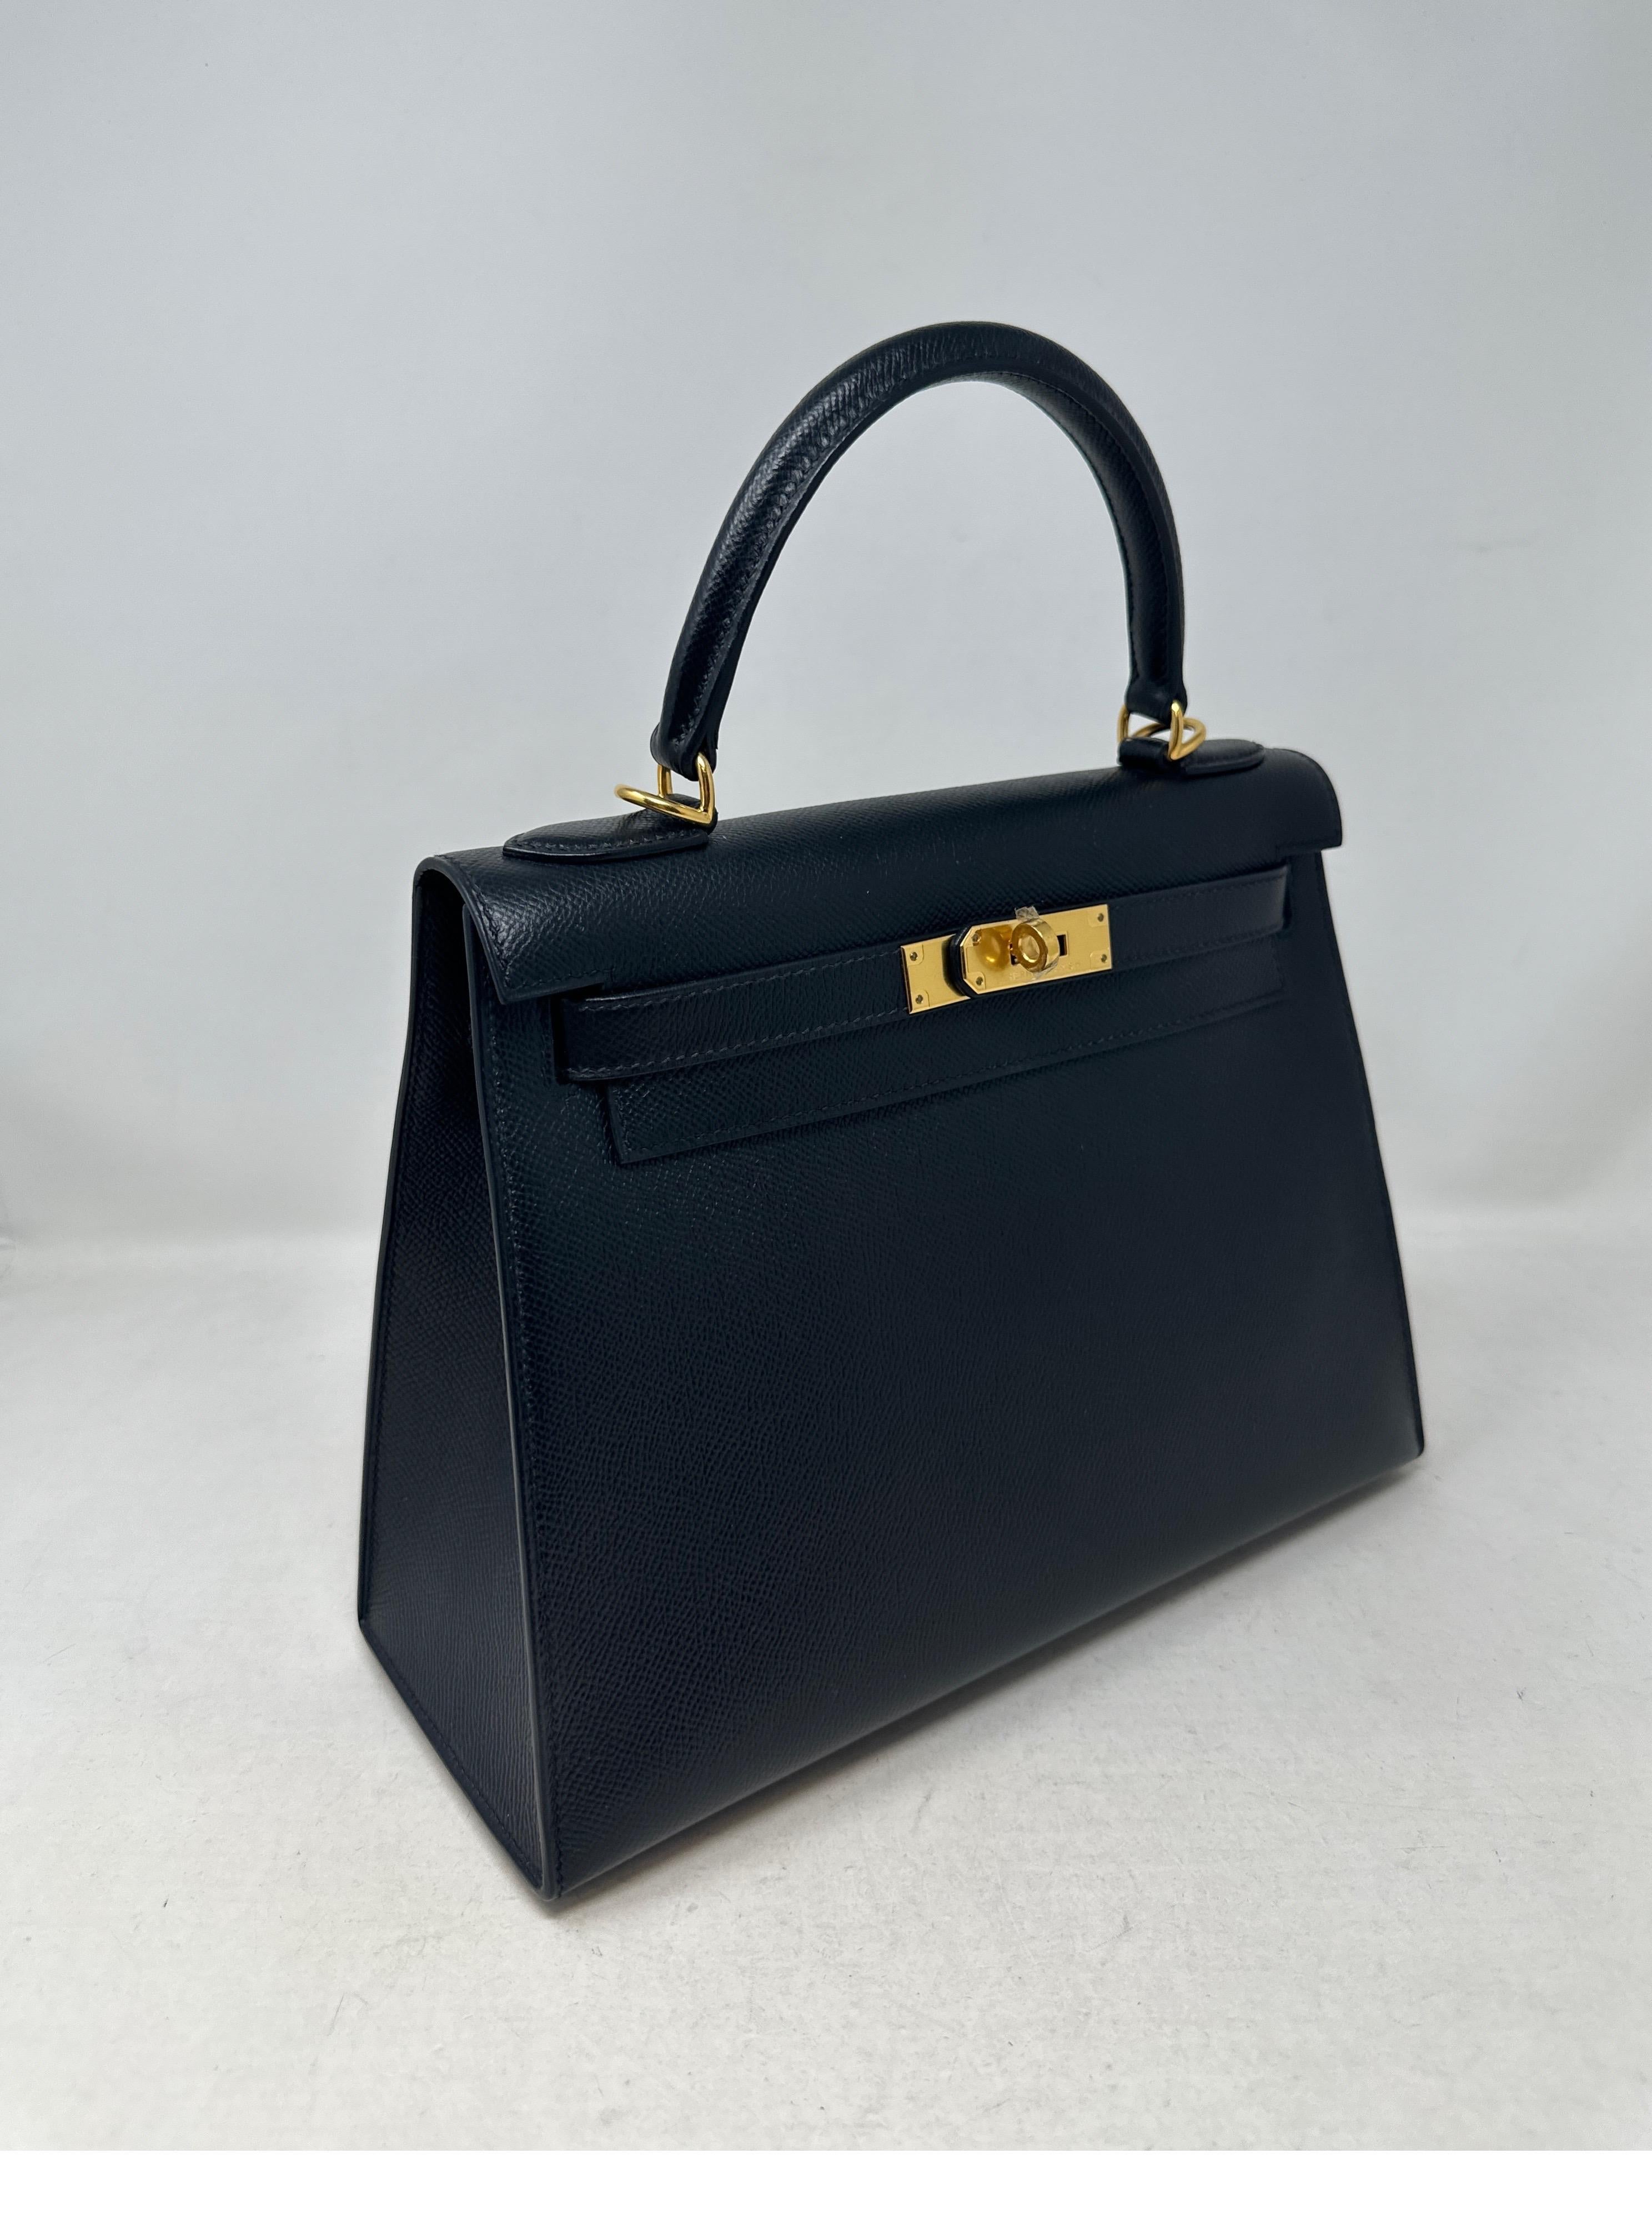 Schwarze Kelly 28 Tasche von Hermès für Damen oder Herren im Angebot